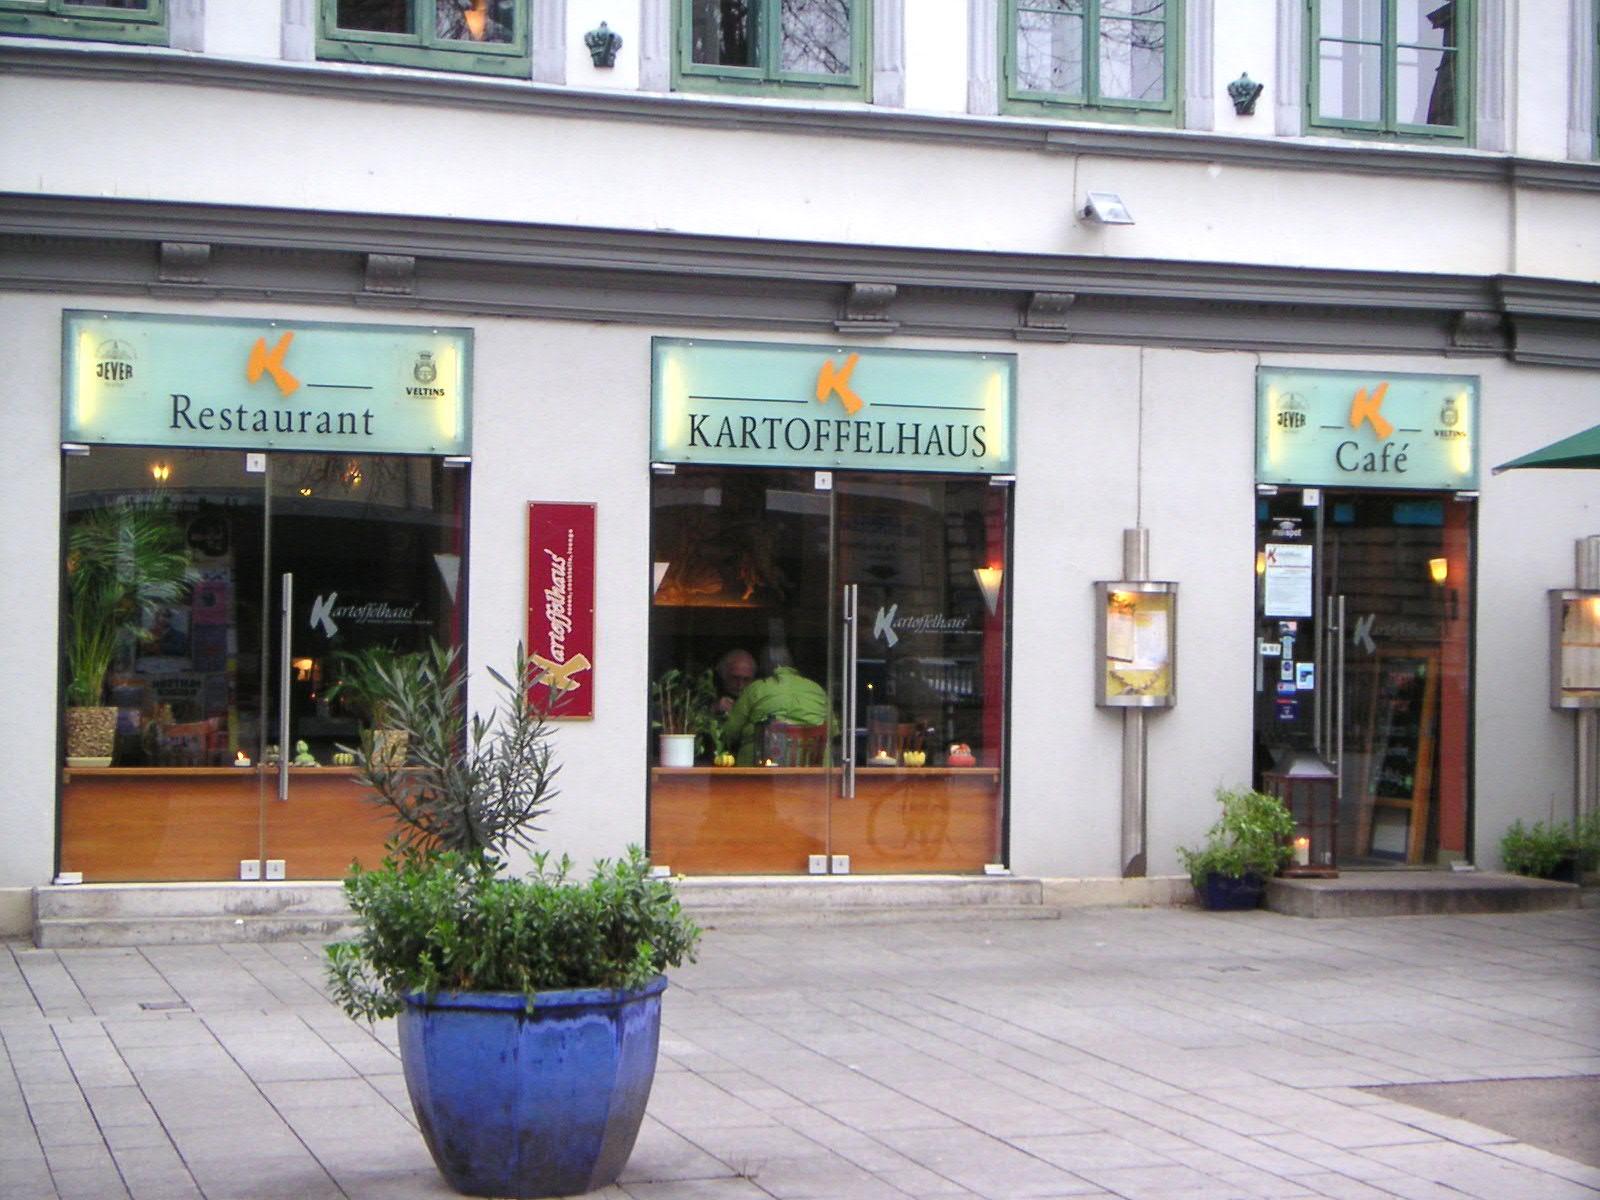 Restaurant Kartoffelhaus in der Goetheallee 8, Eingang